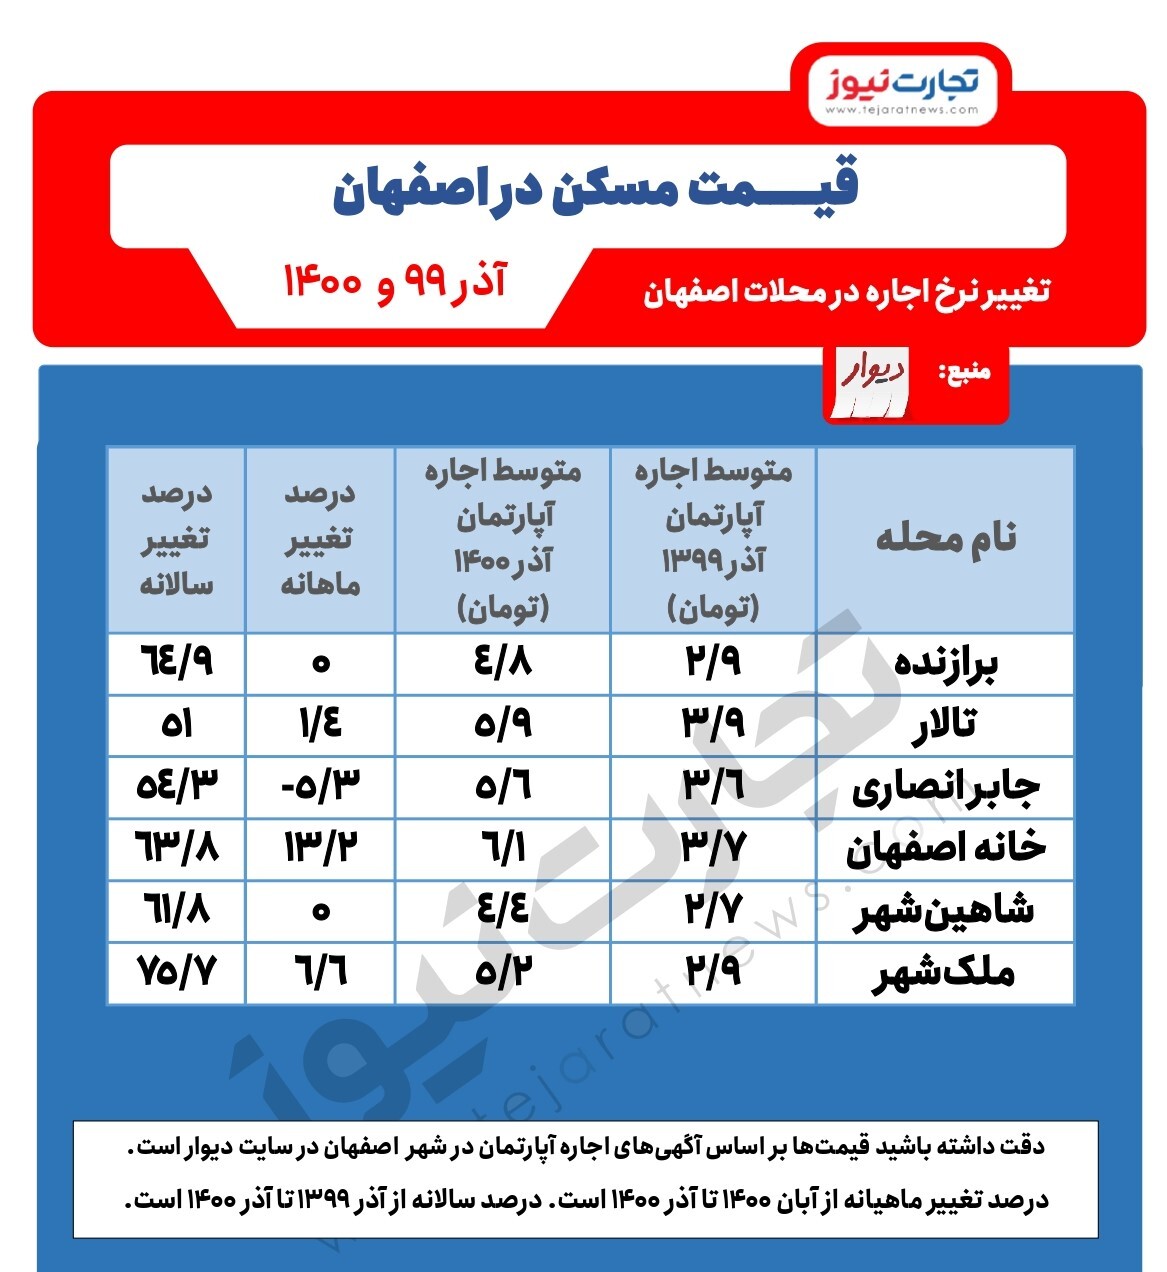 تغییر نرخ اجاره در اصفهان/ افزایش ۷۰ درصدی اجاره در ملک شهر اصفهان